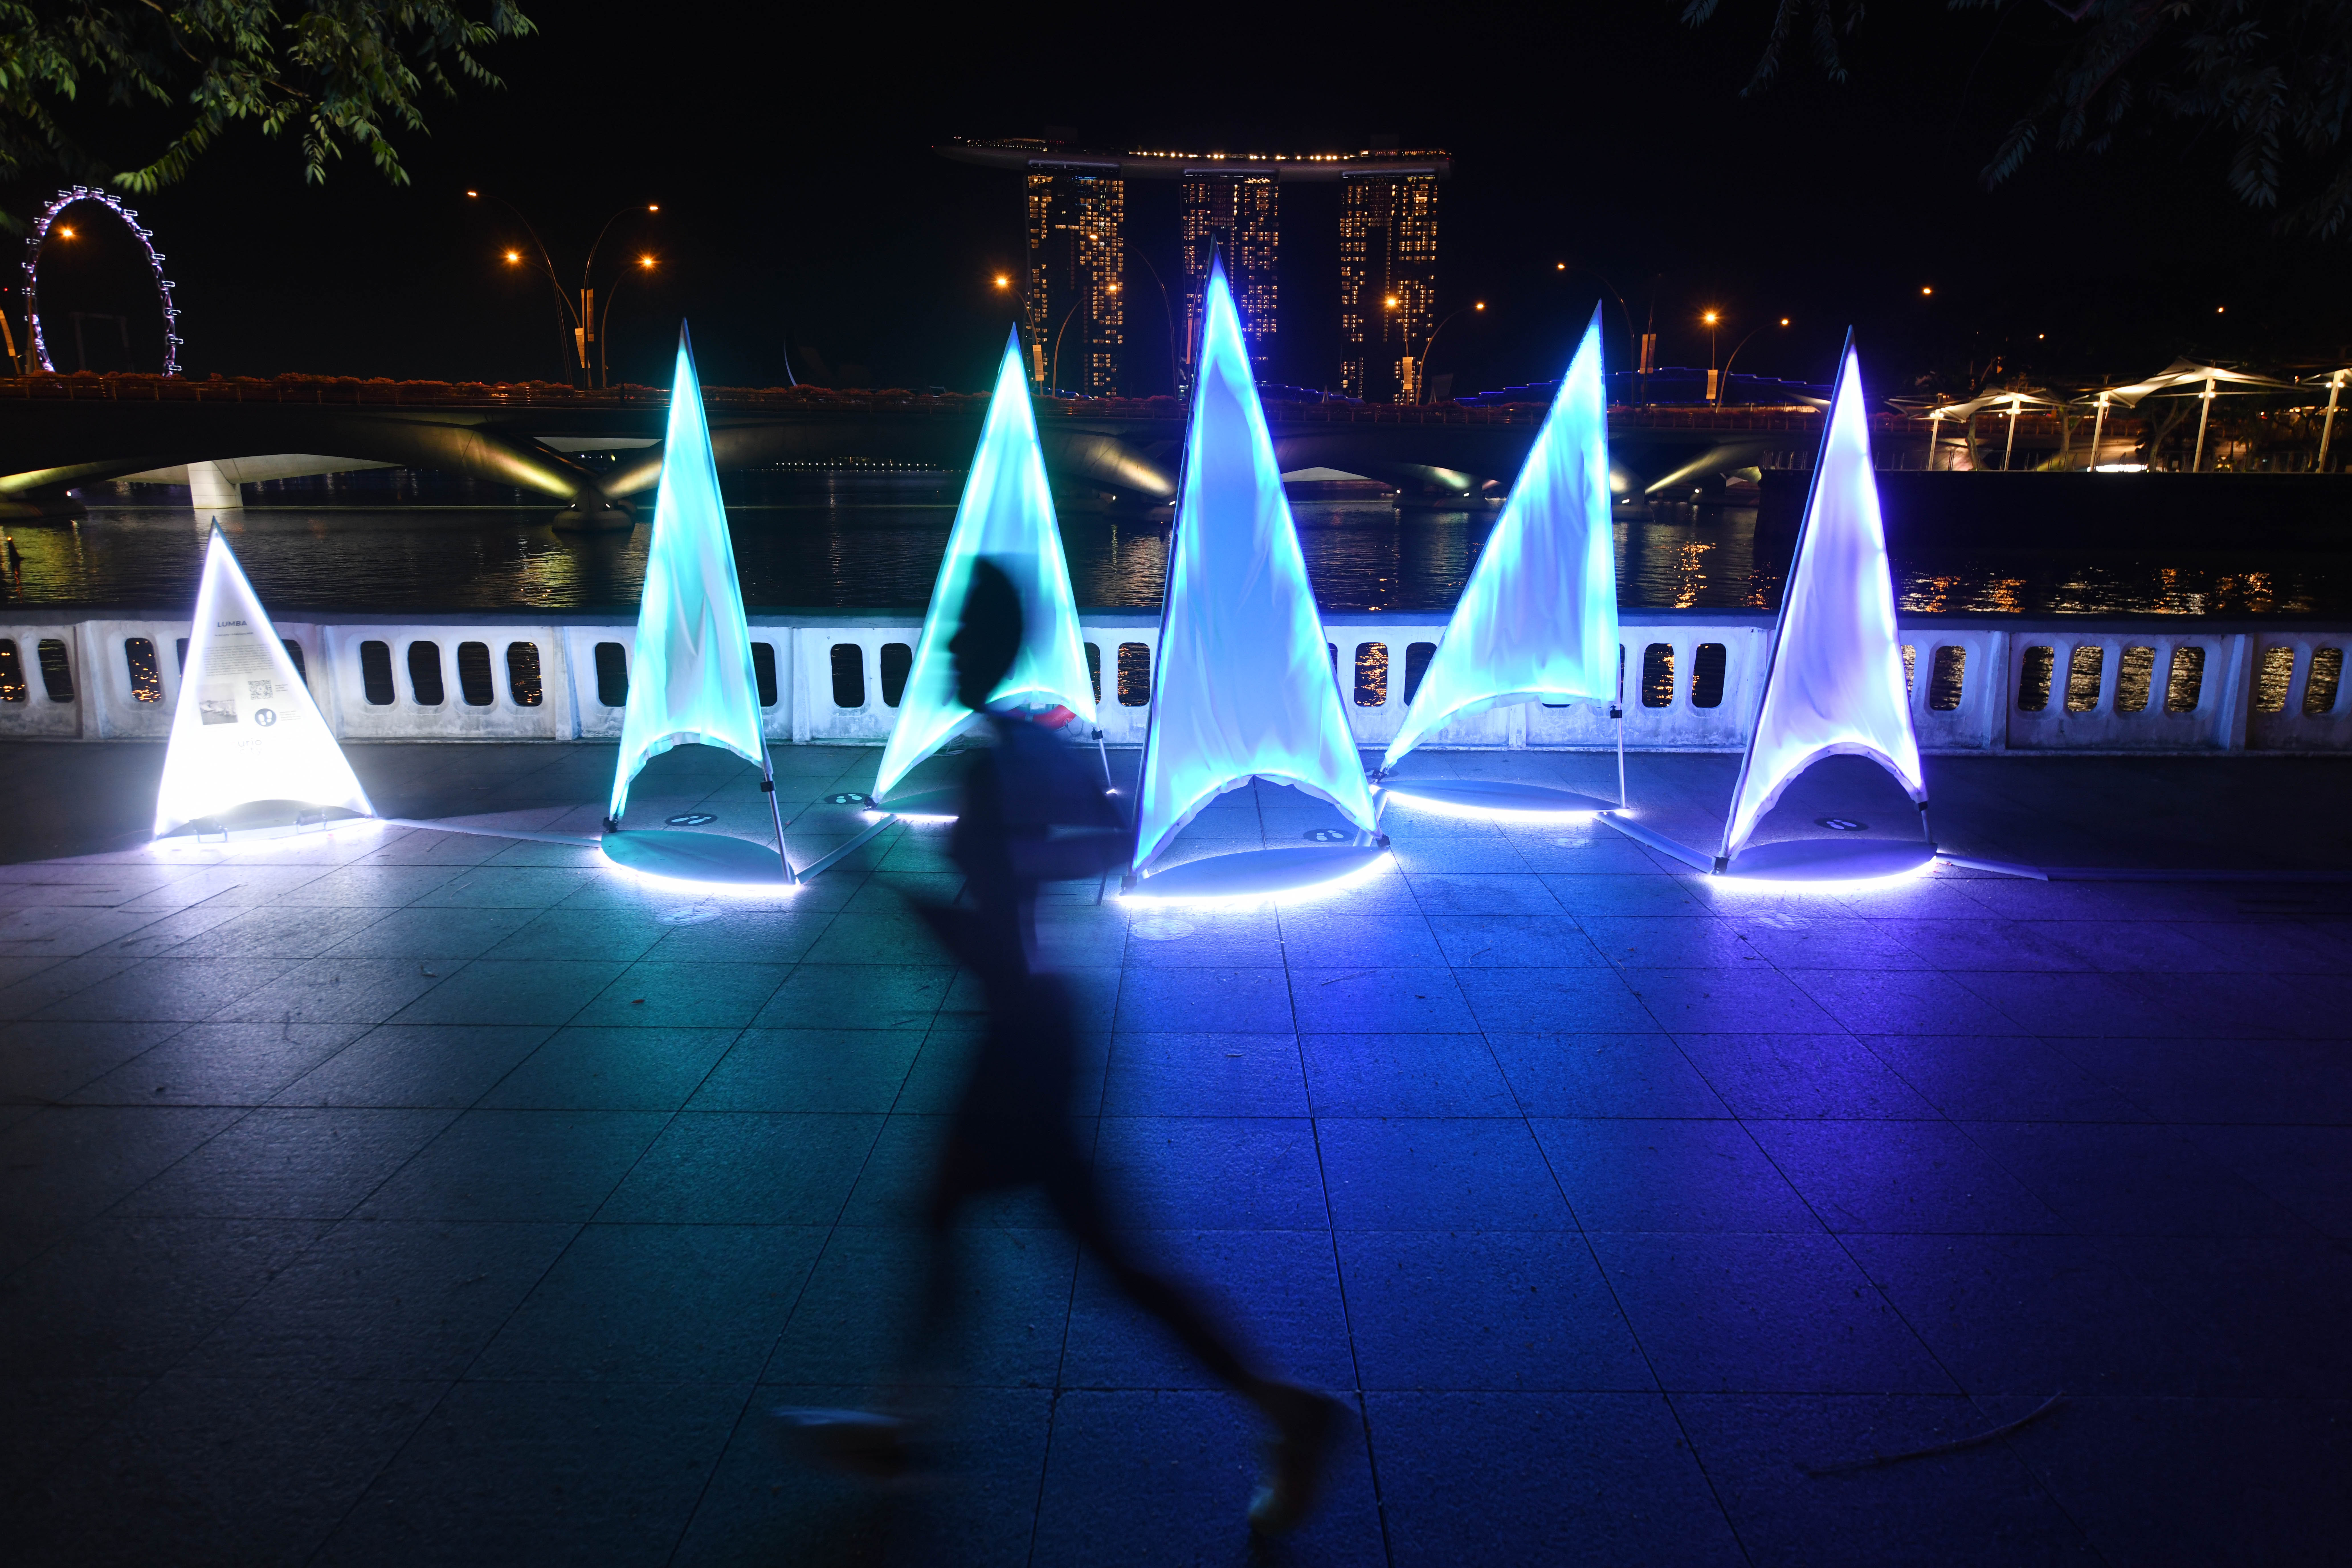 SINGAPURA, Foto yang diabadikan pada 11 Januari 2022 ini menunjukkan instalasi cahaya dalam pratinjau media untuk acara Light to Night Festival 2022 yang akan digelar di Singapura. Light to Night Festival akan berlangsung pada 14 Januari hingga 3 Februari di Singapura. (Xinhua/Then Chih Wey)